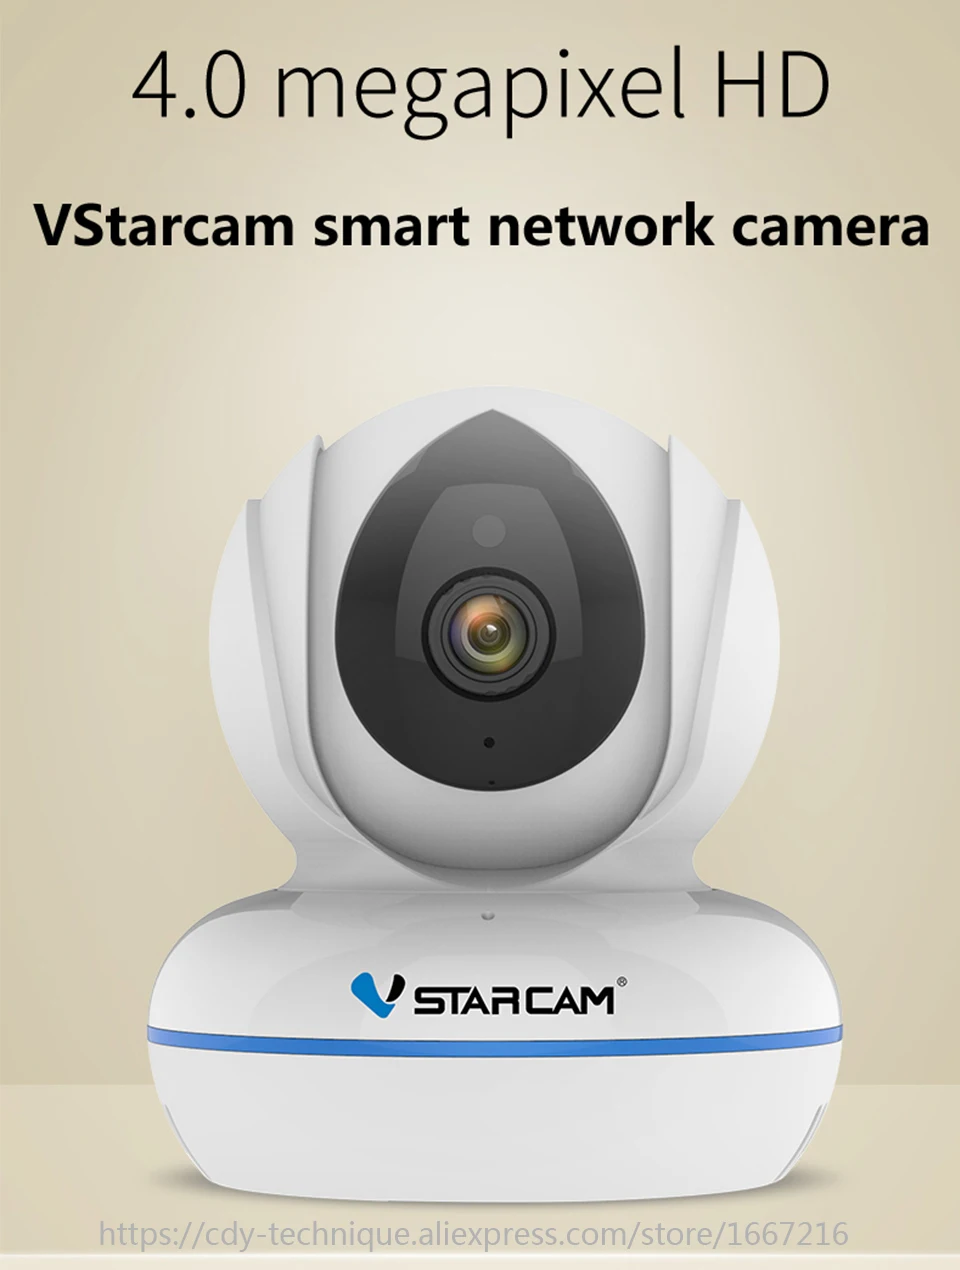 Vstarcam C22Q 4MP Full HD WiFi камера 2,4G/5G Wi fi Радионяня Камера панорамирование/наклон видеонаблюдения безопасности IP камера H.265